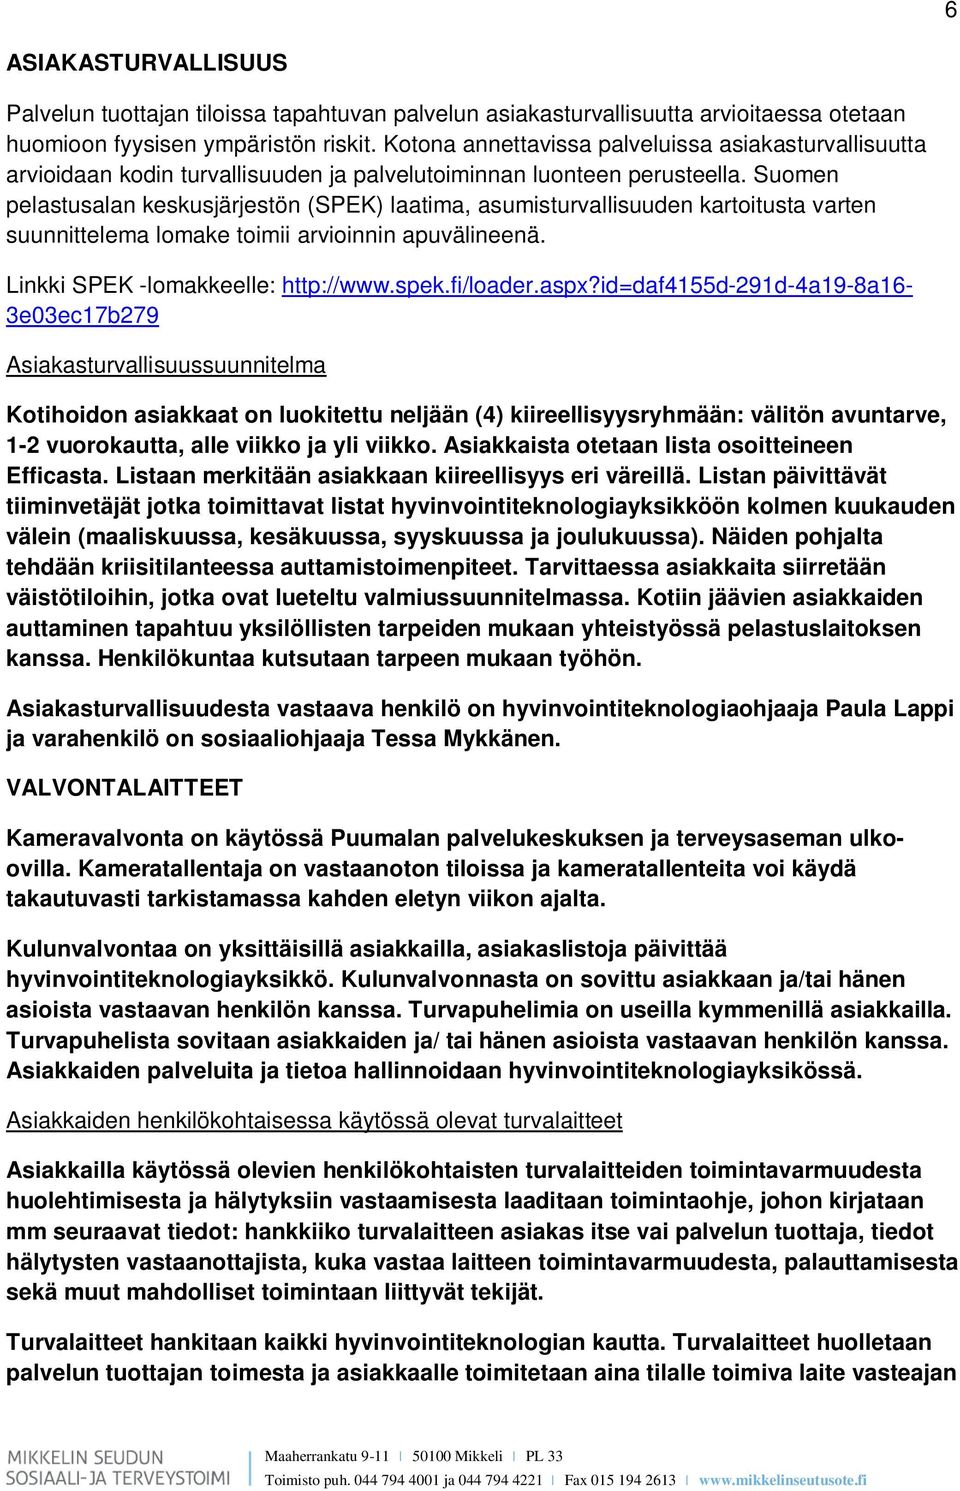 Suomen pelastusalan keskusjärjestön (SPEK) laatima, asumisturvallisuuden kartoitusta varten suunnittelema lomake toimii arvioinnin apuvälineenä. Linkki SPEK -lomakkeelle: http://www.spek.fi/loader.